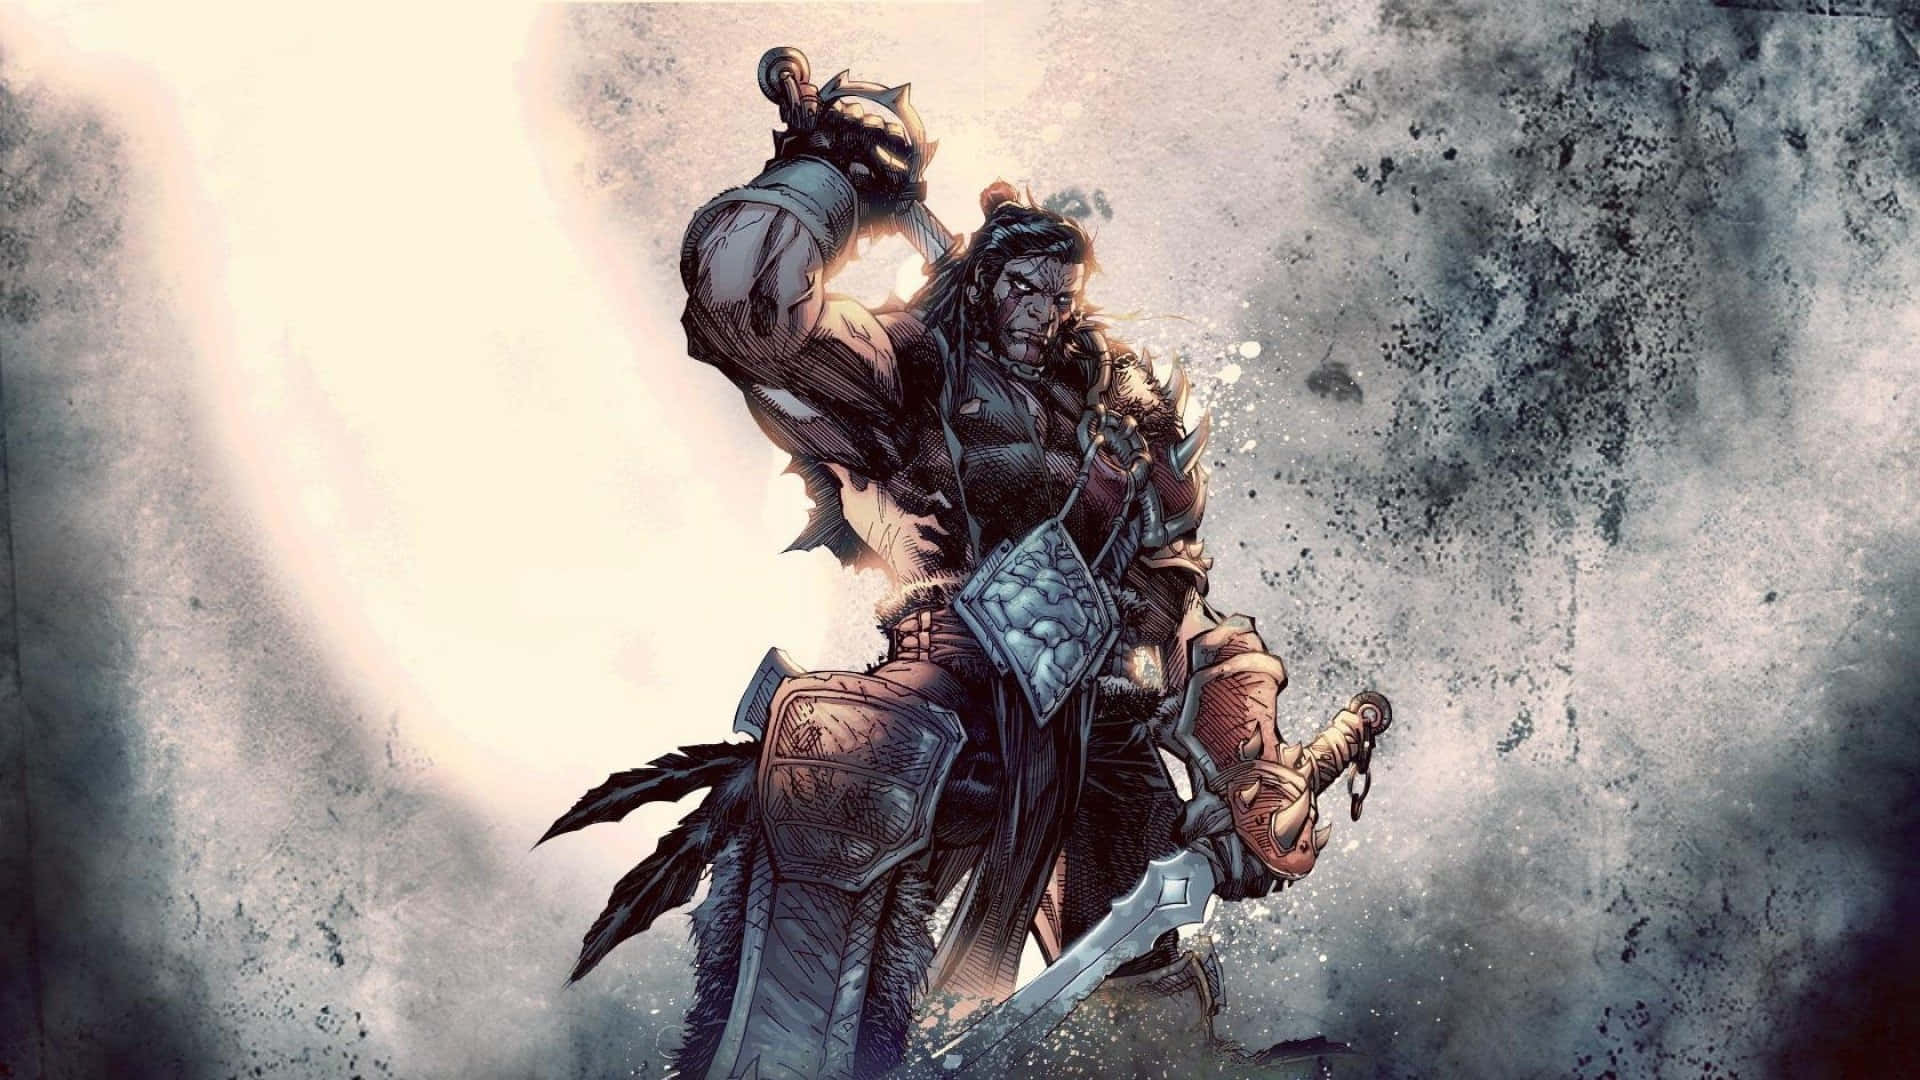 Nimmam Epischen Kampf In World Of Warcraft Teil1920x1080 Wallpaper